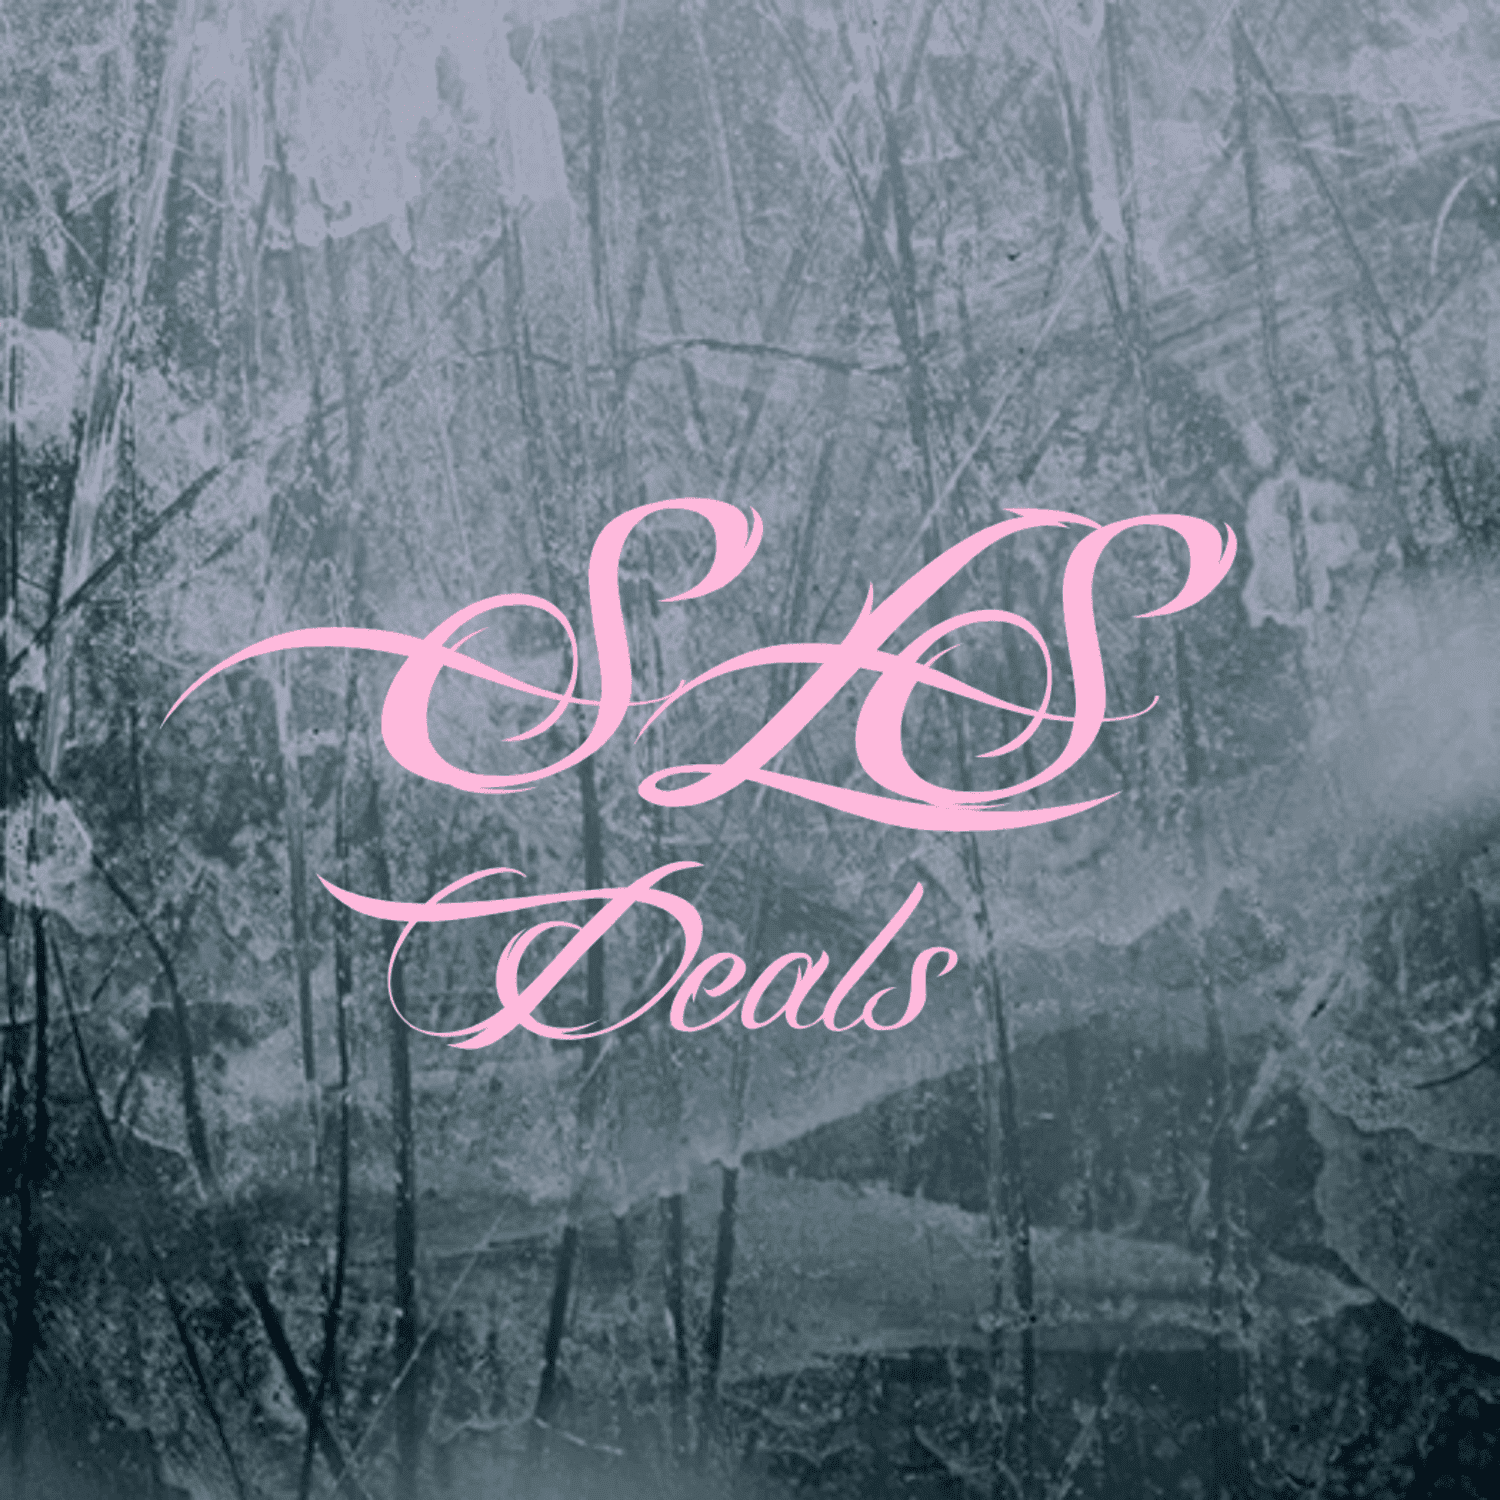 SLS Deals